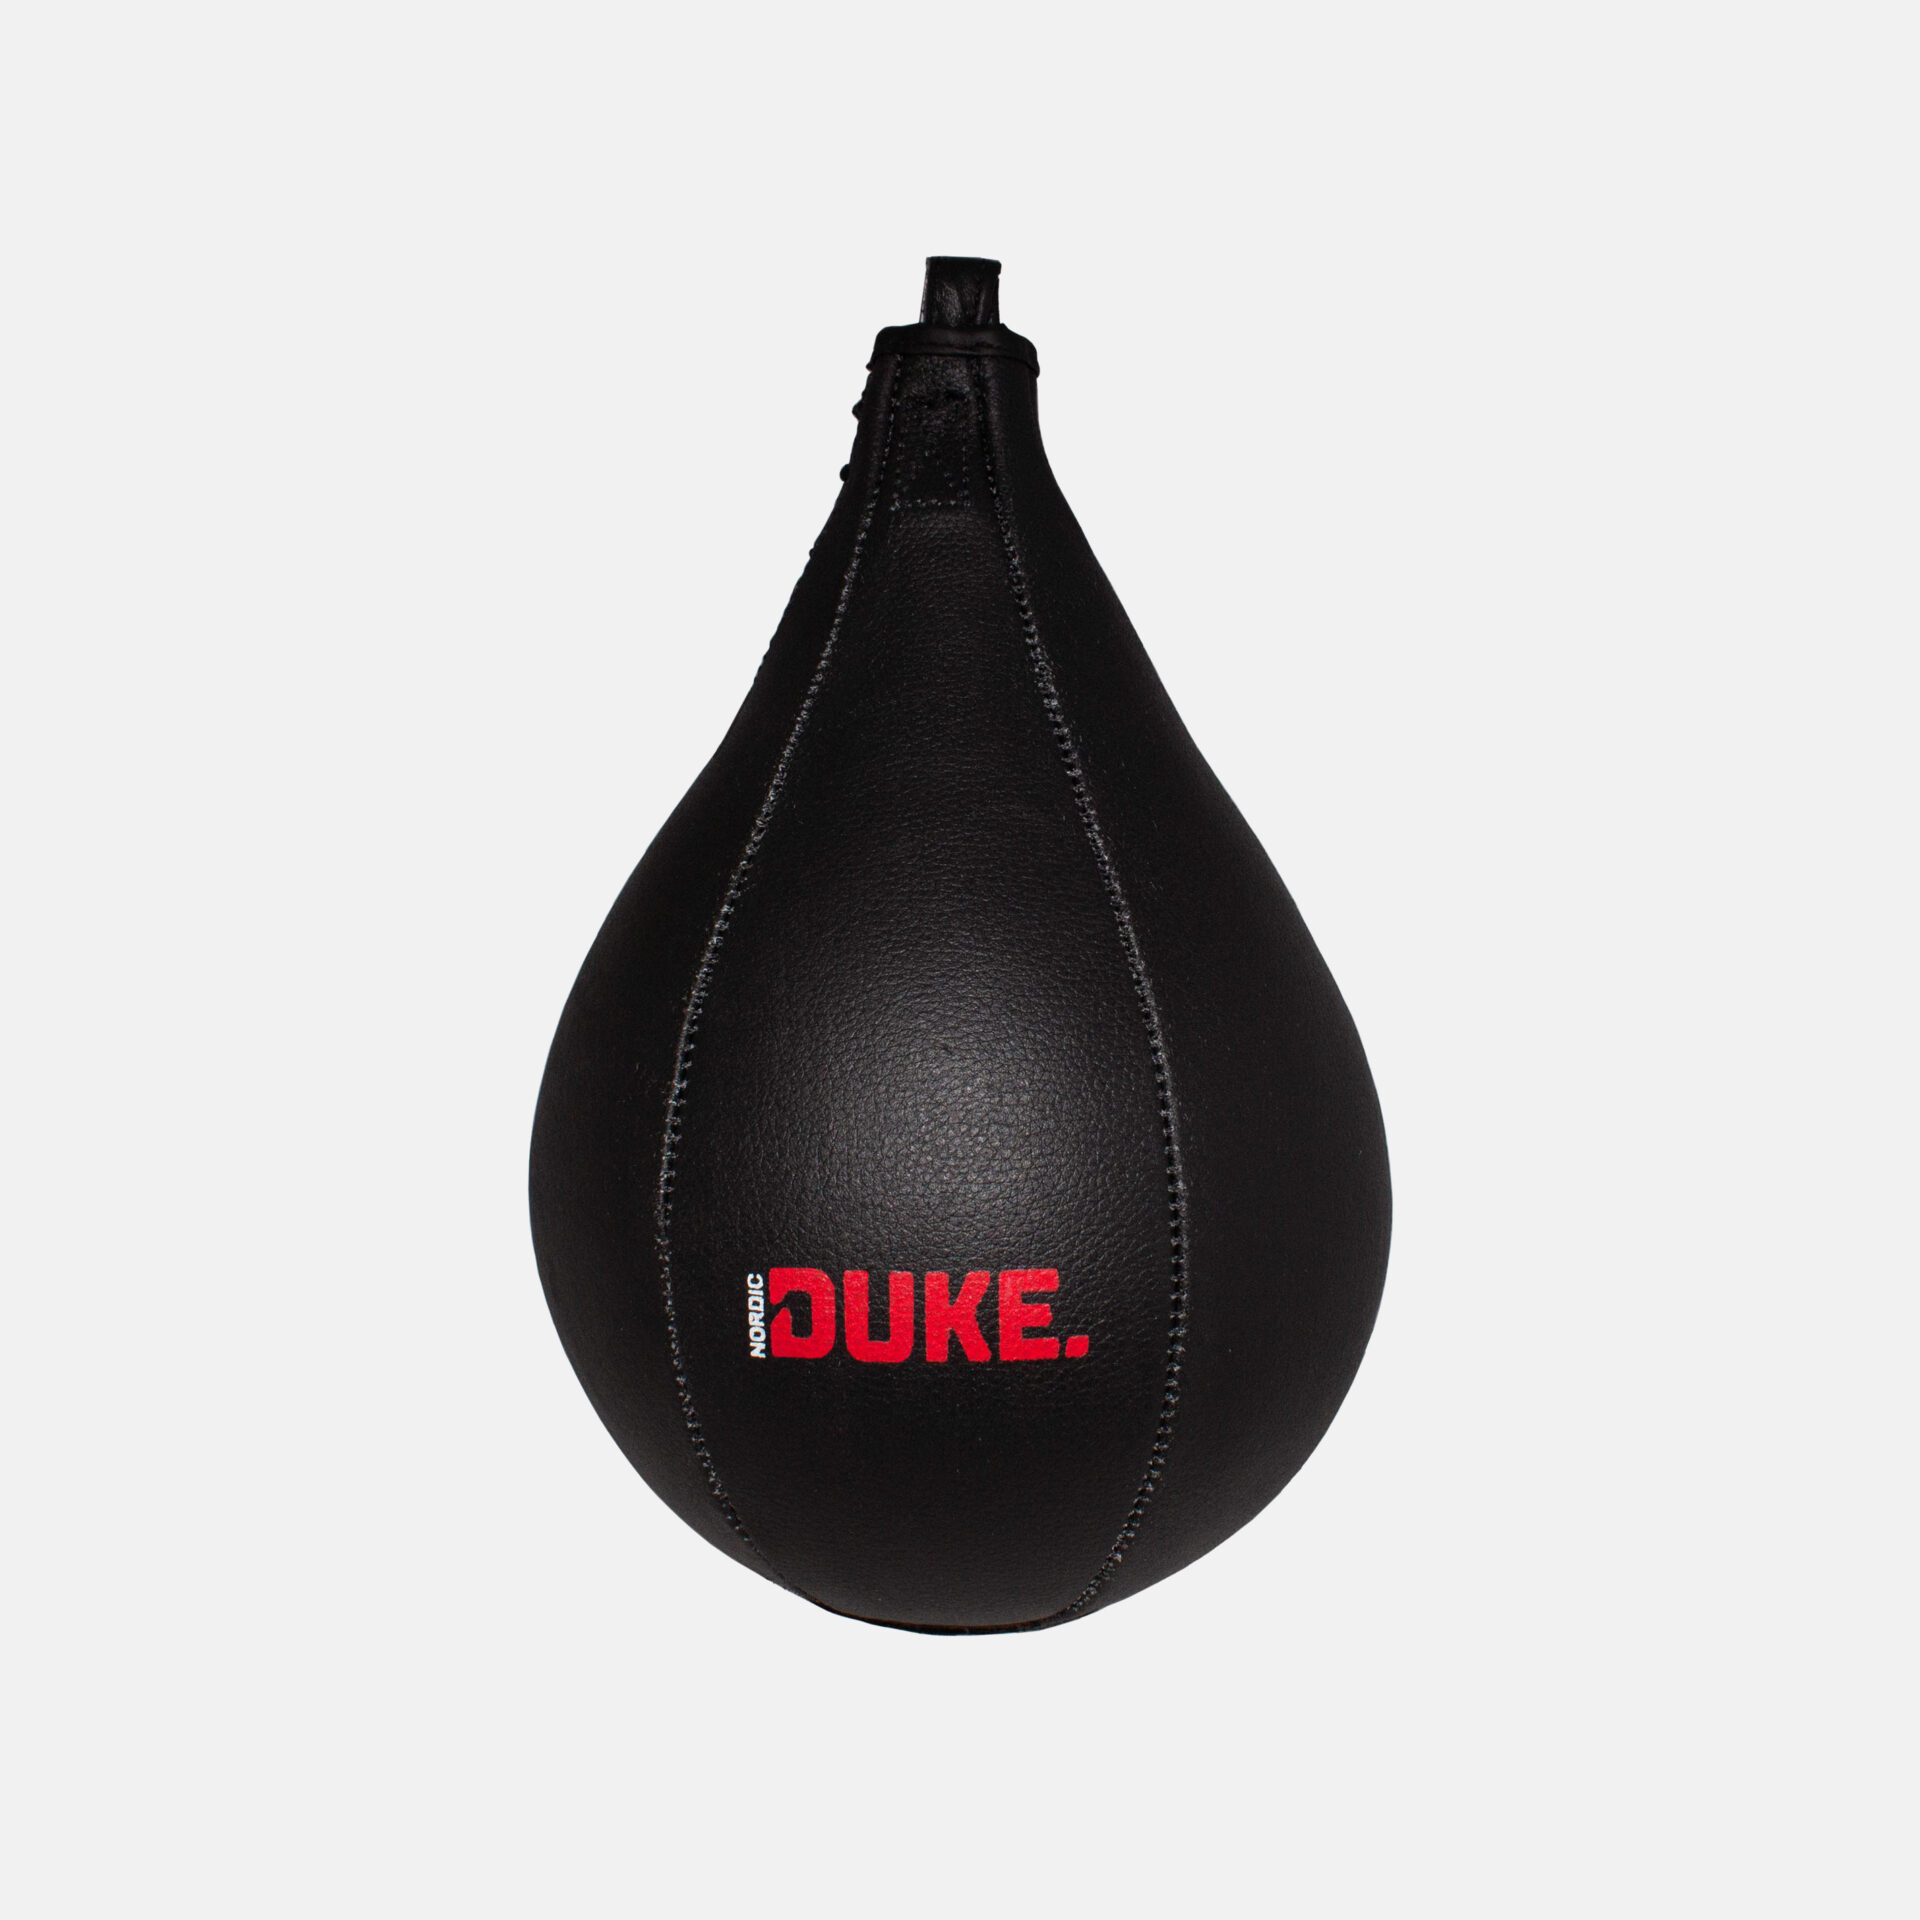 Nordic Duke® päärynäpallo - Speed Ball tekniikkaharjoituksiin.